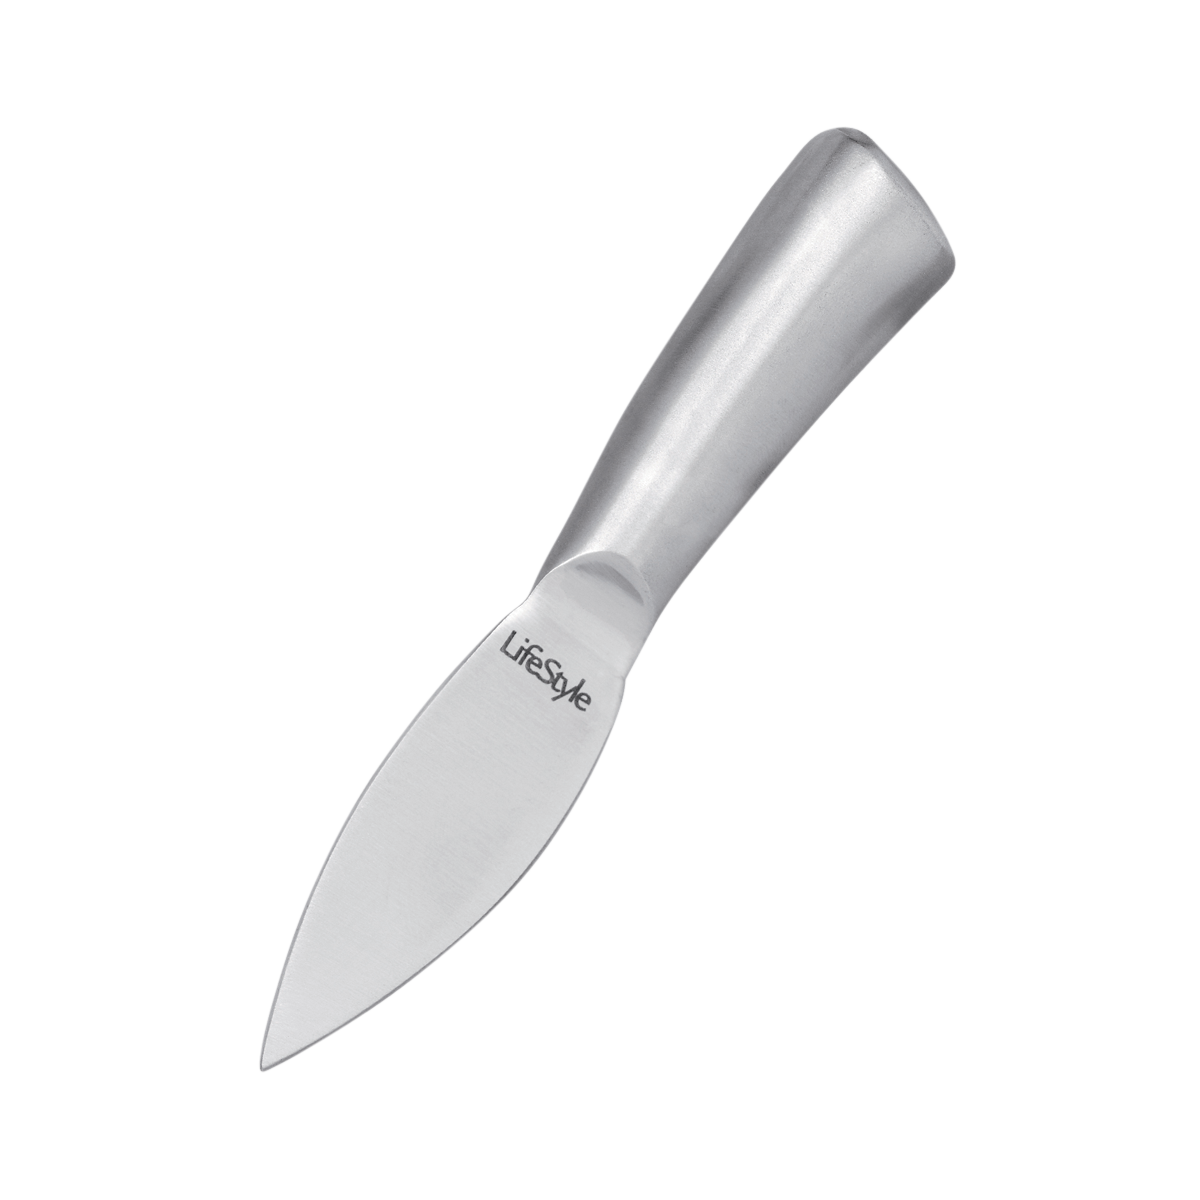 Mini cuchillo queso – LifeStyle